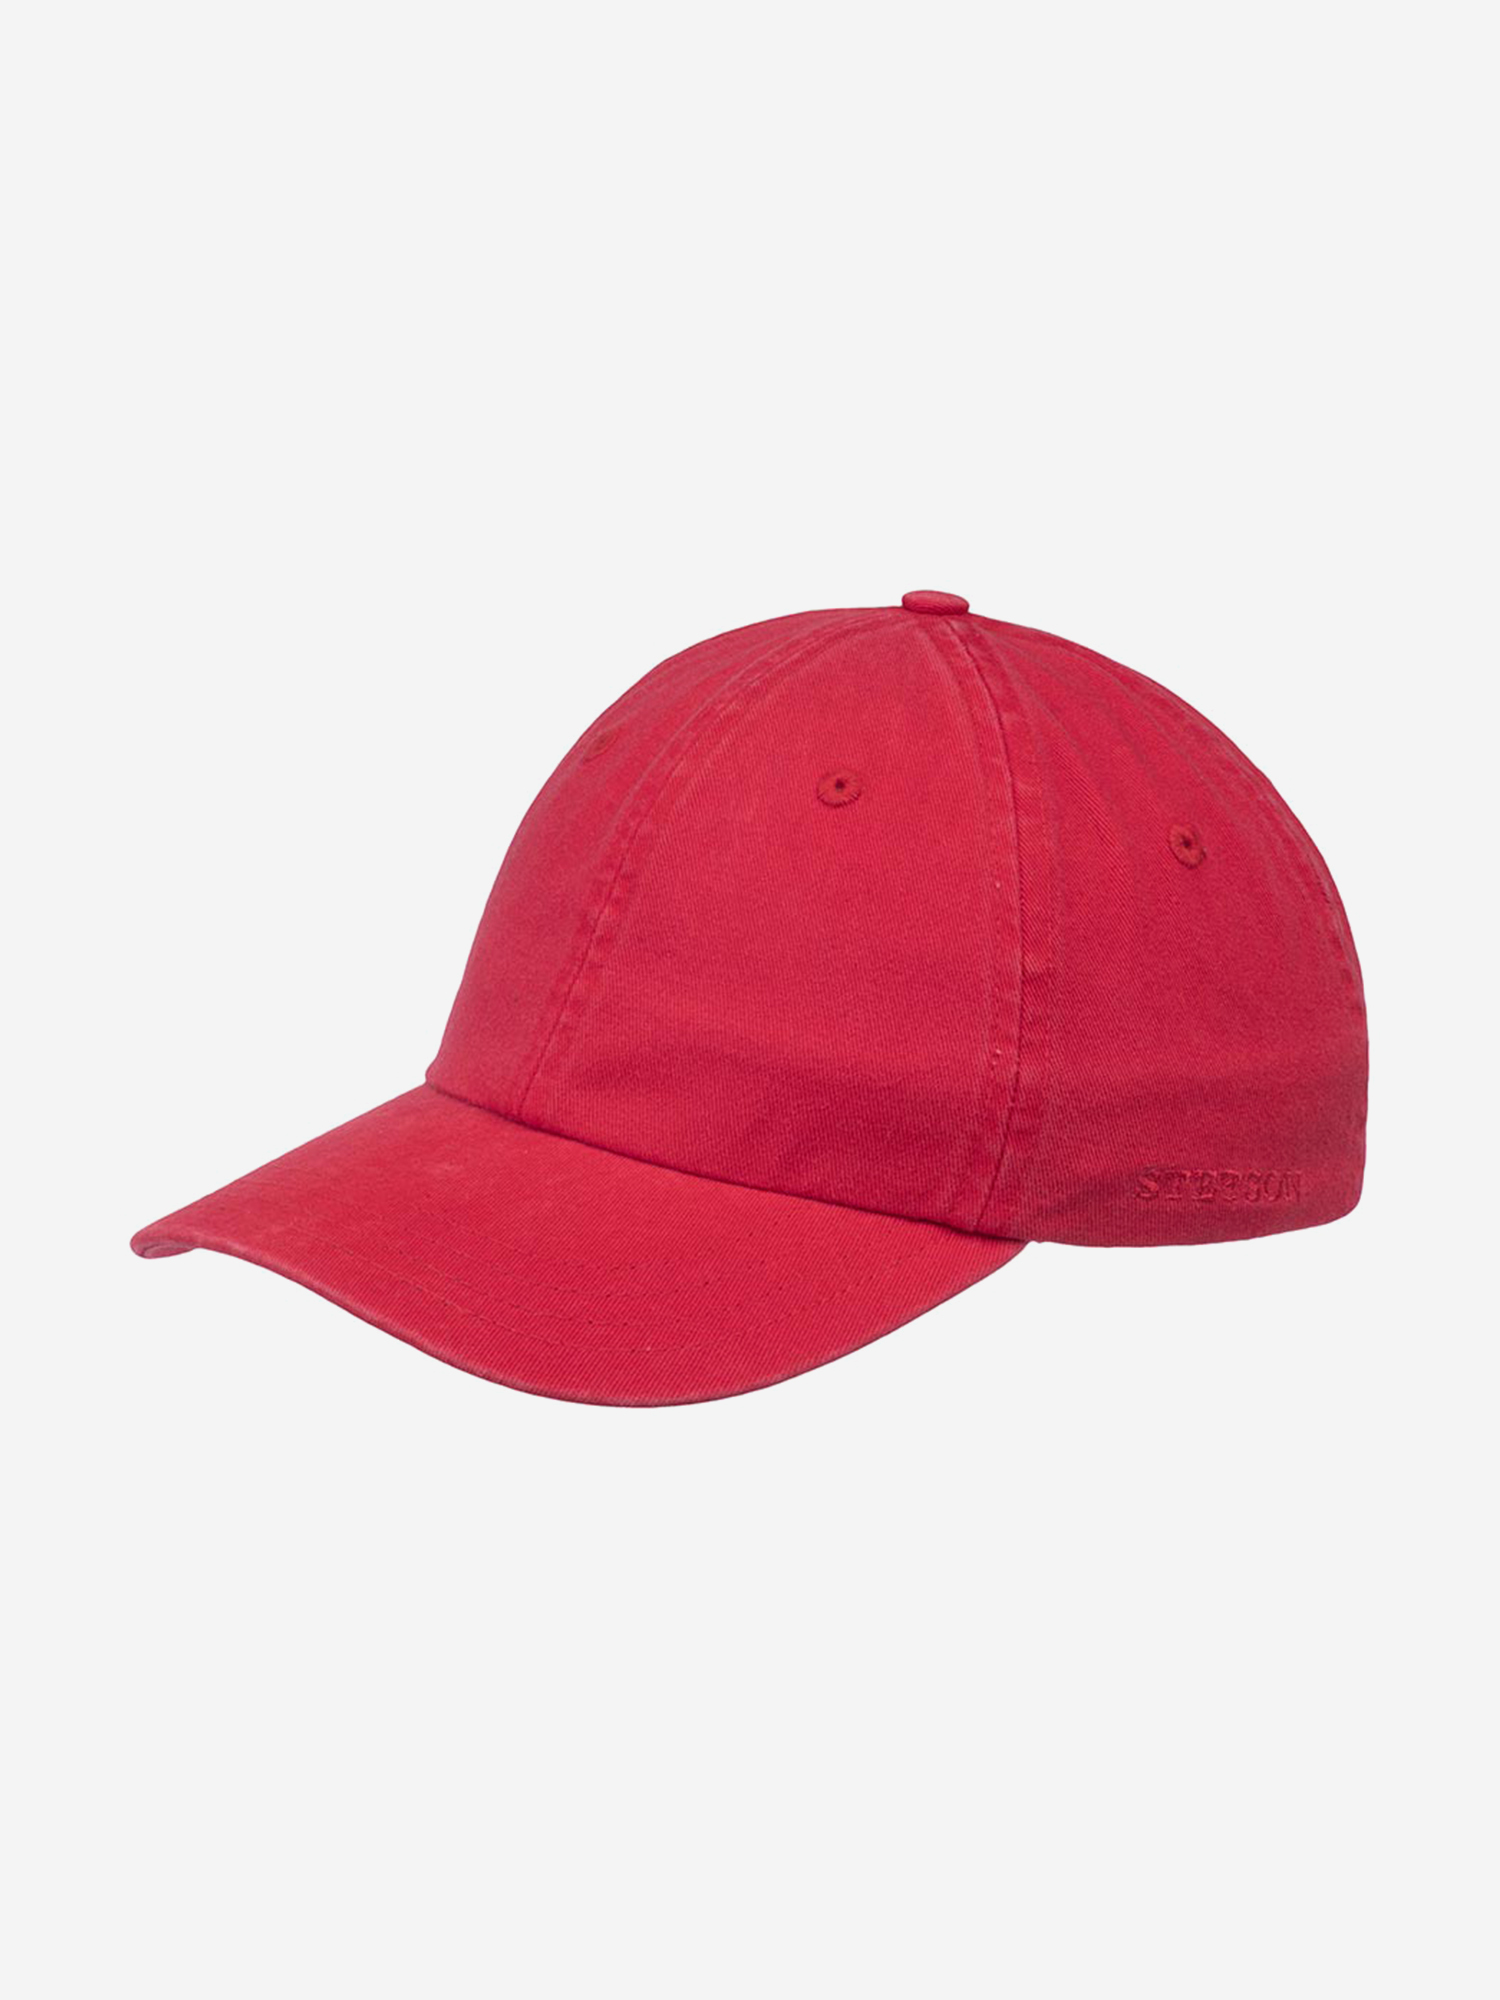 Бейсболка STETSON 7711101 BASEBALL CAP COTTON (красный), Красный